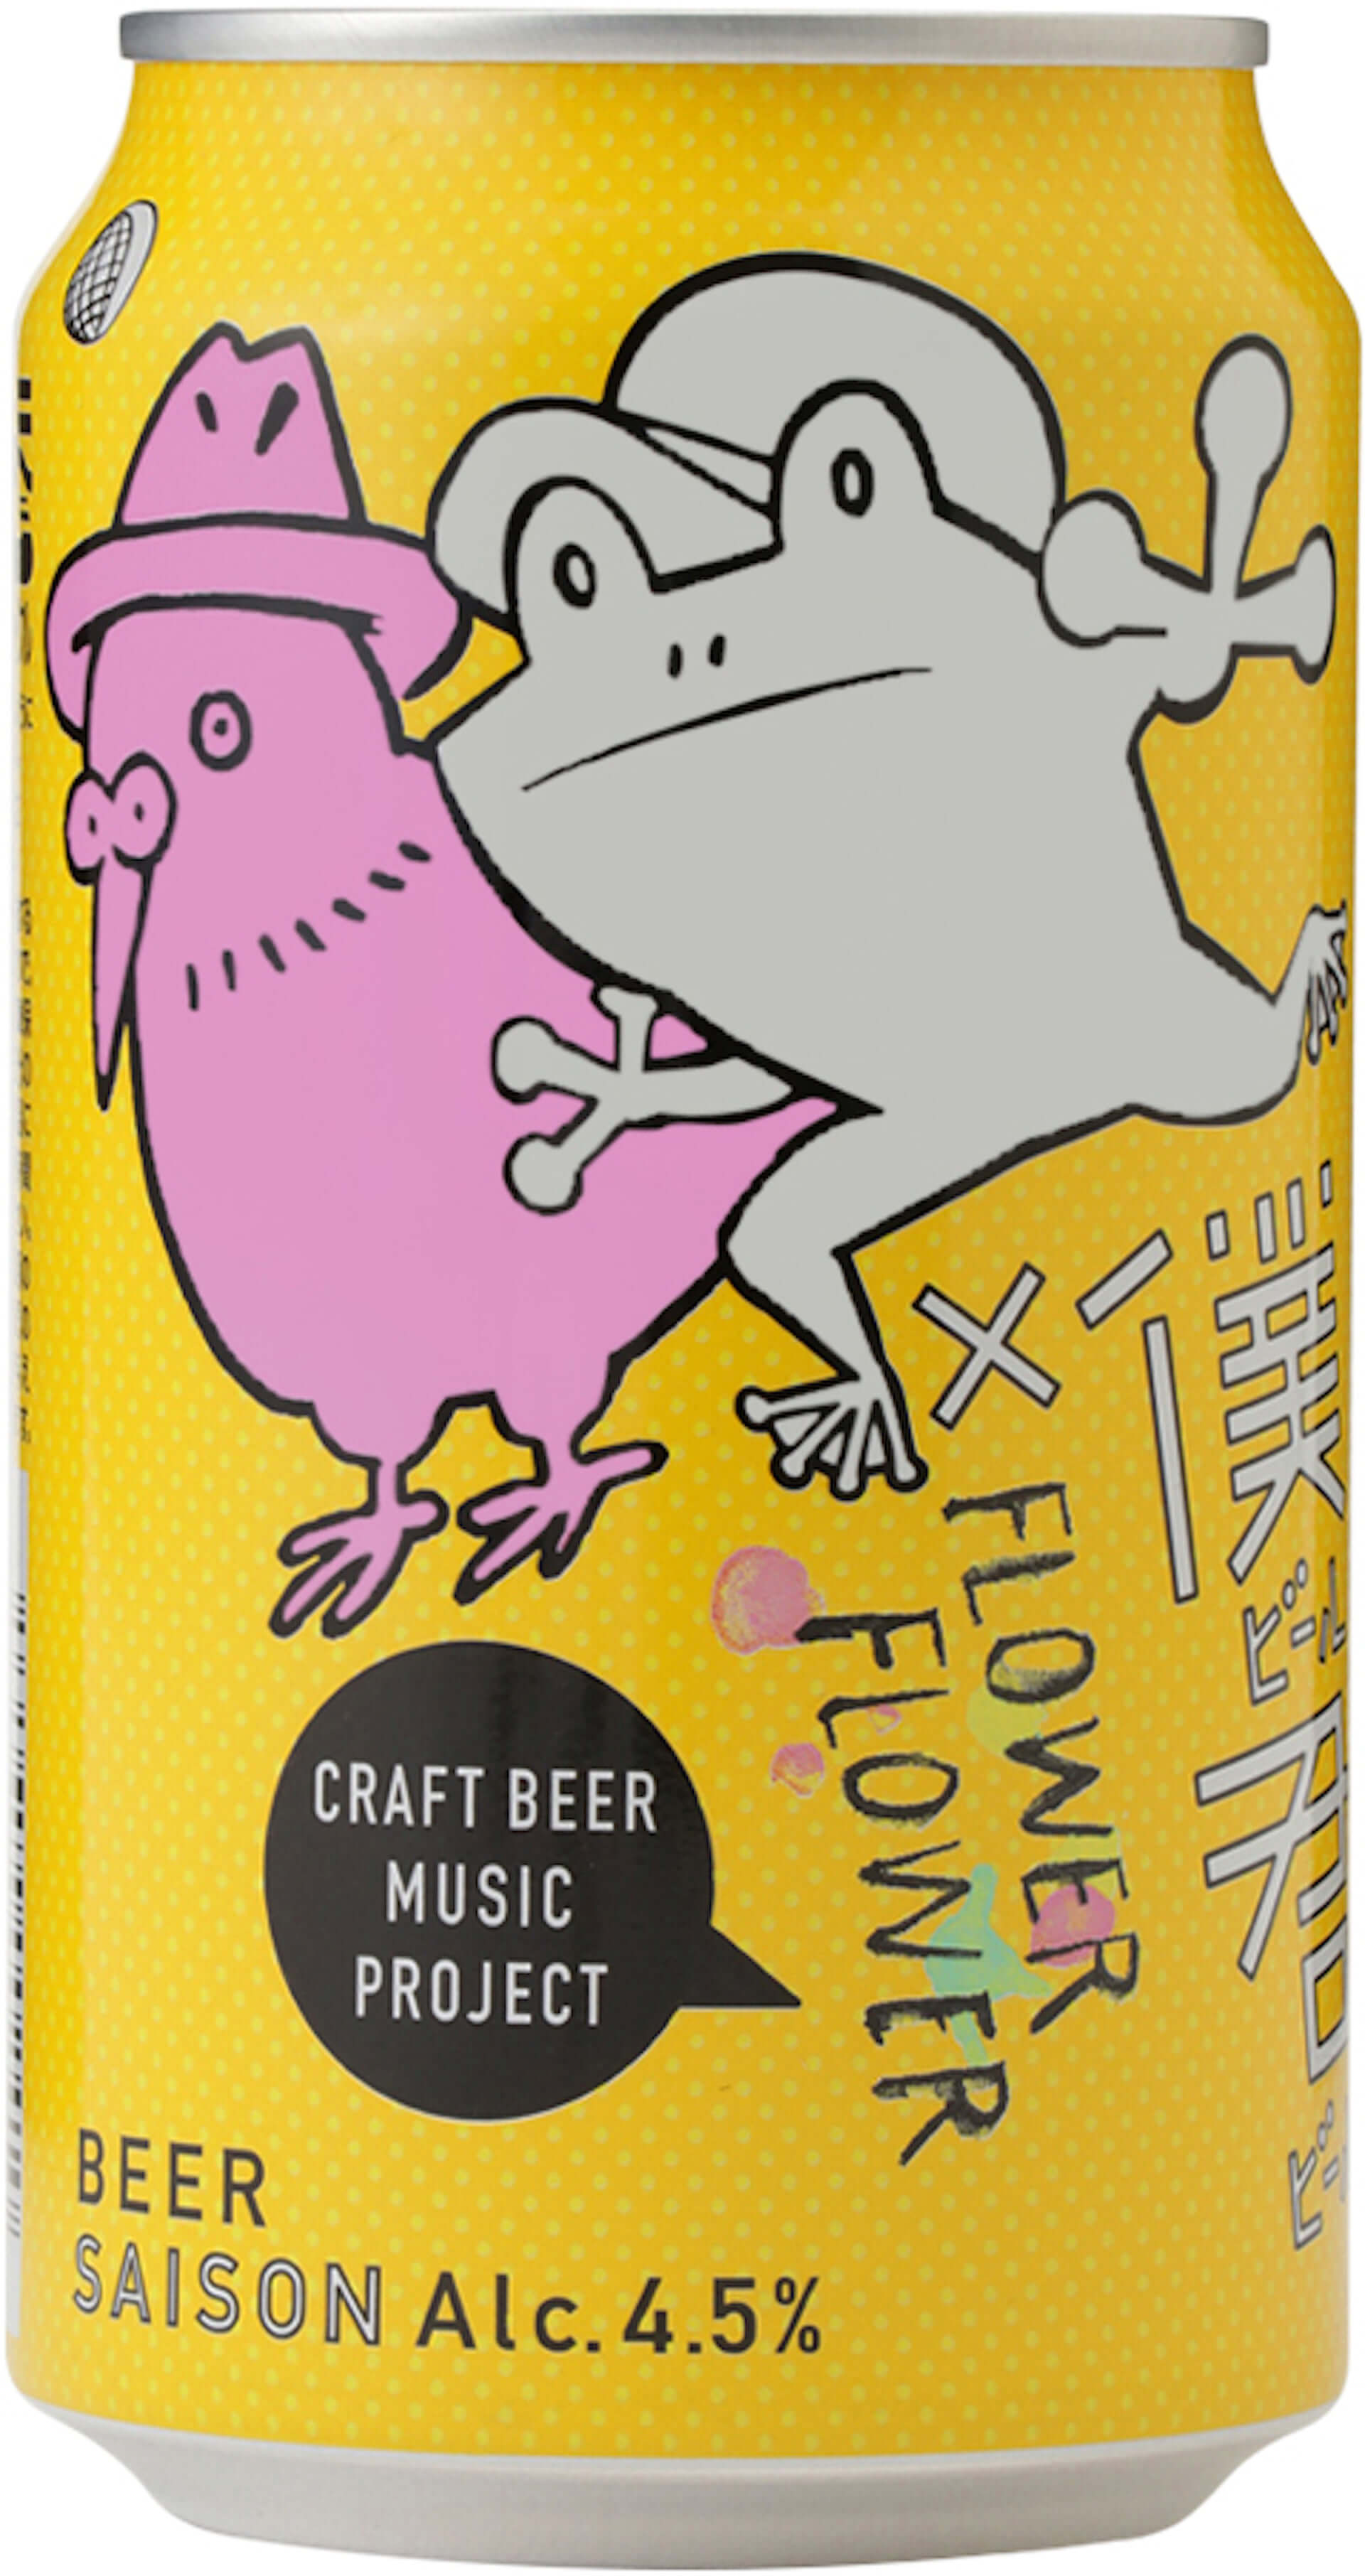 クラフトビール『僕ビール君ビール』にFLOWER FLOWERとのコラボデザイン缶が登場！オリジナル曲“はなうた”もリリース決定 music200722_craft-beer-music-project_2-1920x3624